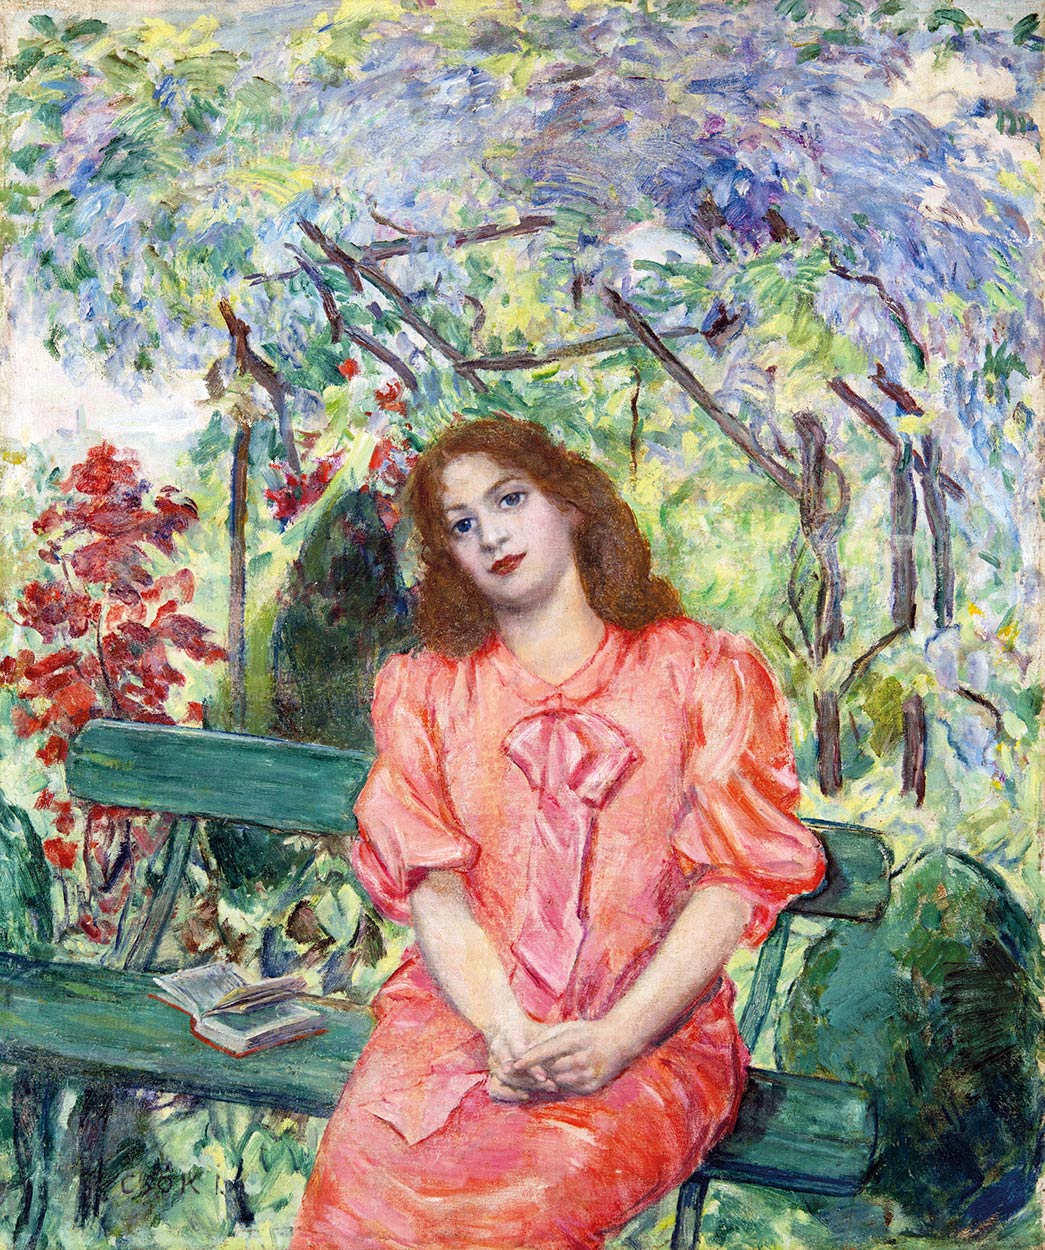 Csók István (1865-1961) Lugasban, Julia in the Bower, around 1905